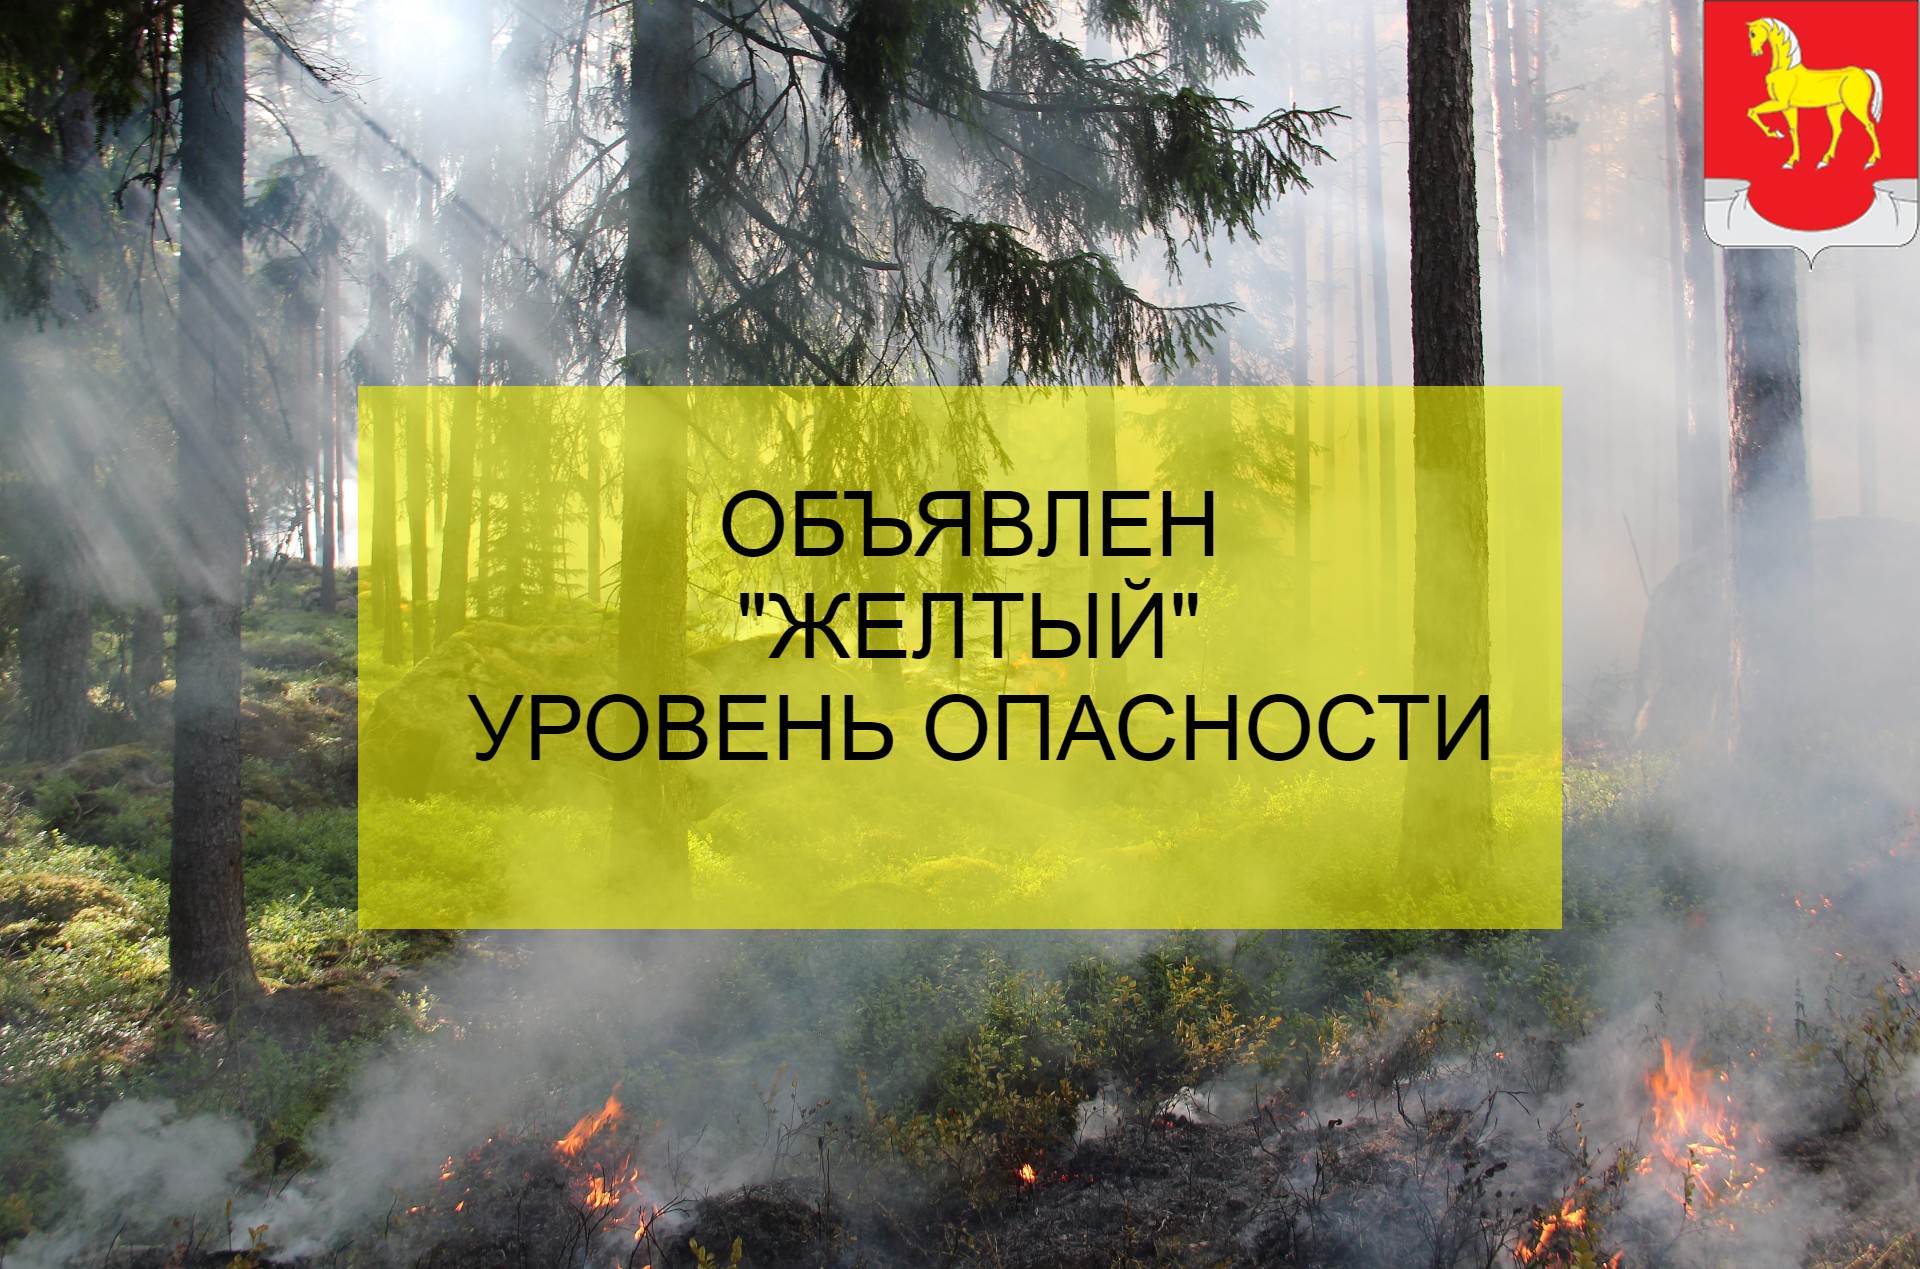 Объявляется «желтый» уровень опасности на территории Ульяновской области!.